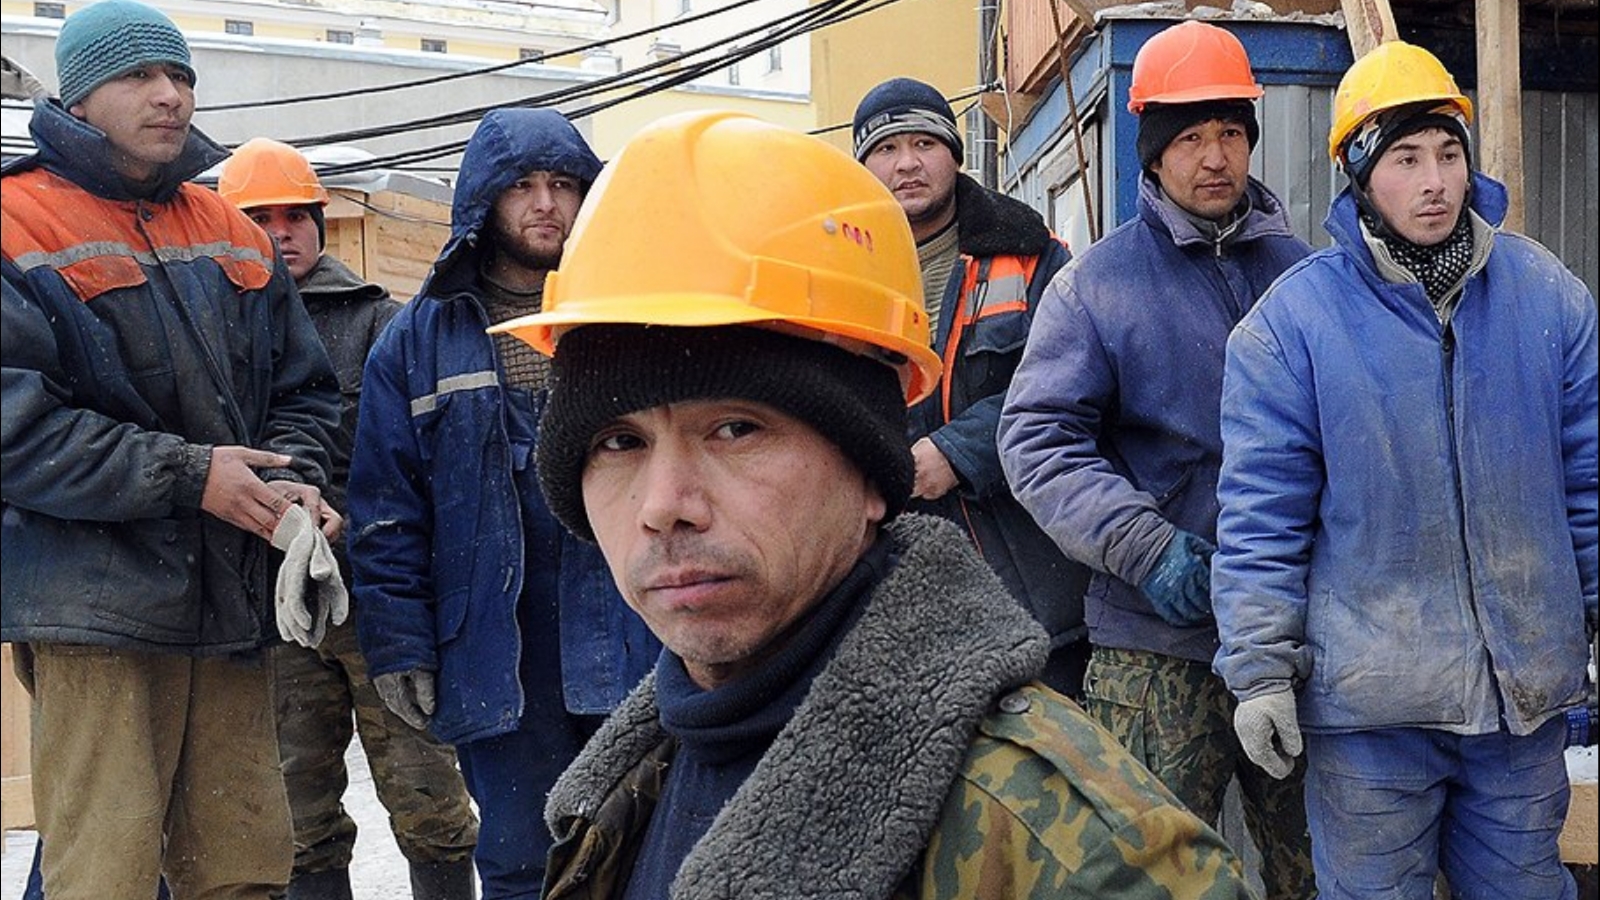 Таджикские рабочие. Мигранты строители. Гастарбайтеры на стройке. Узбеки на стройке. Строитель гастарбайтер.